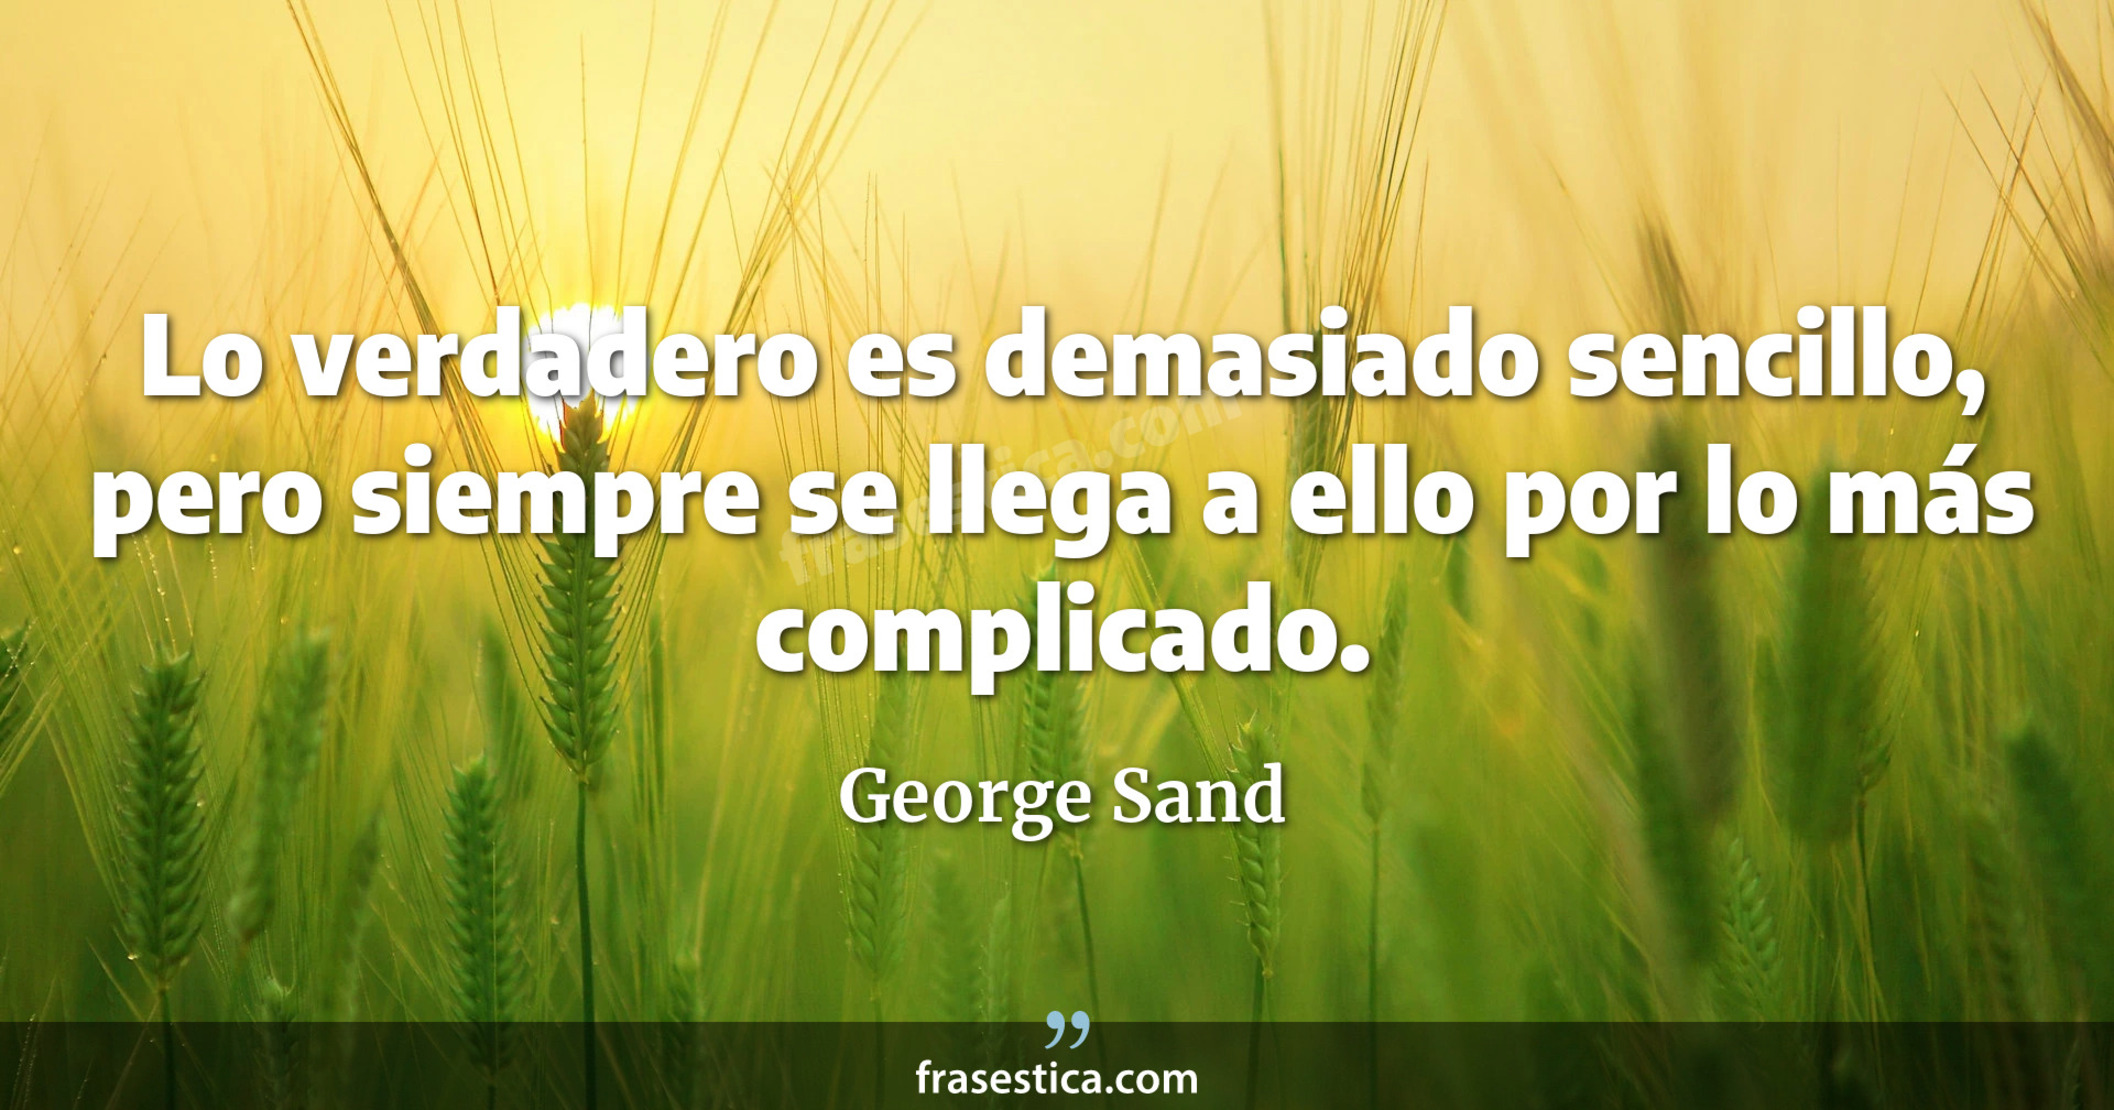 Lo verdadero es demasiado sencillo, pero siempre se llega a ello por lo más complicado. - George Sand